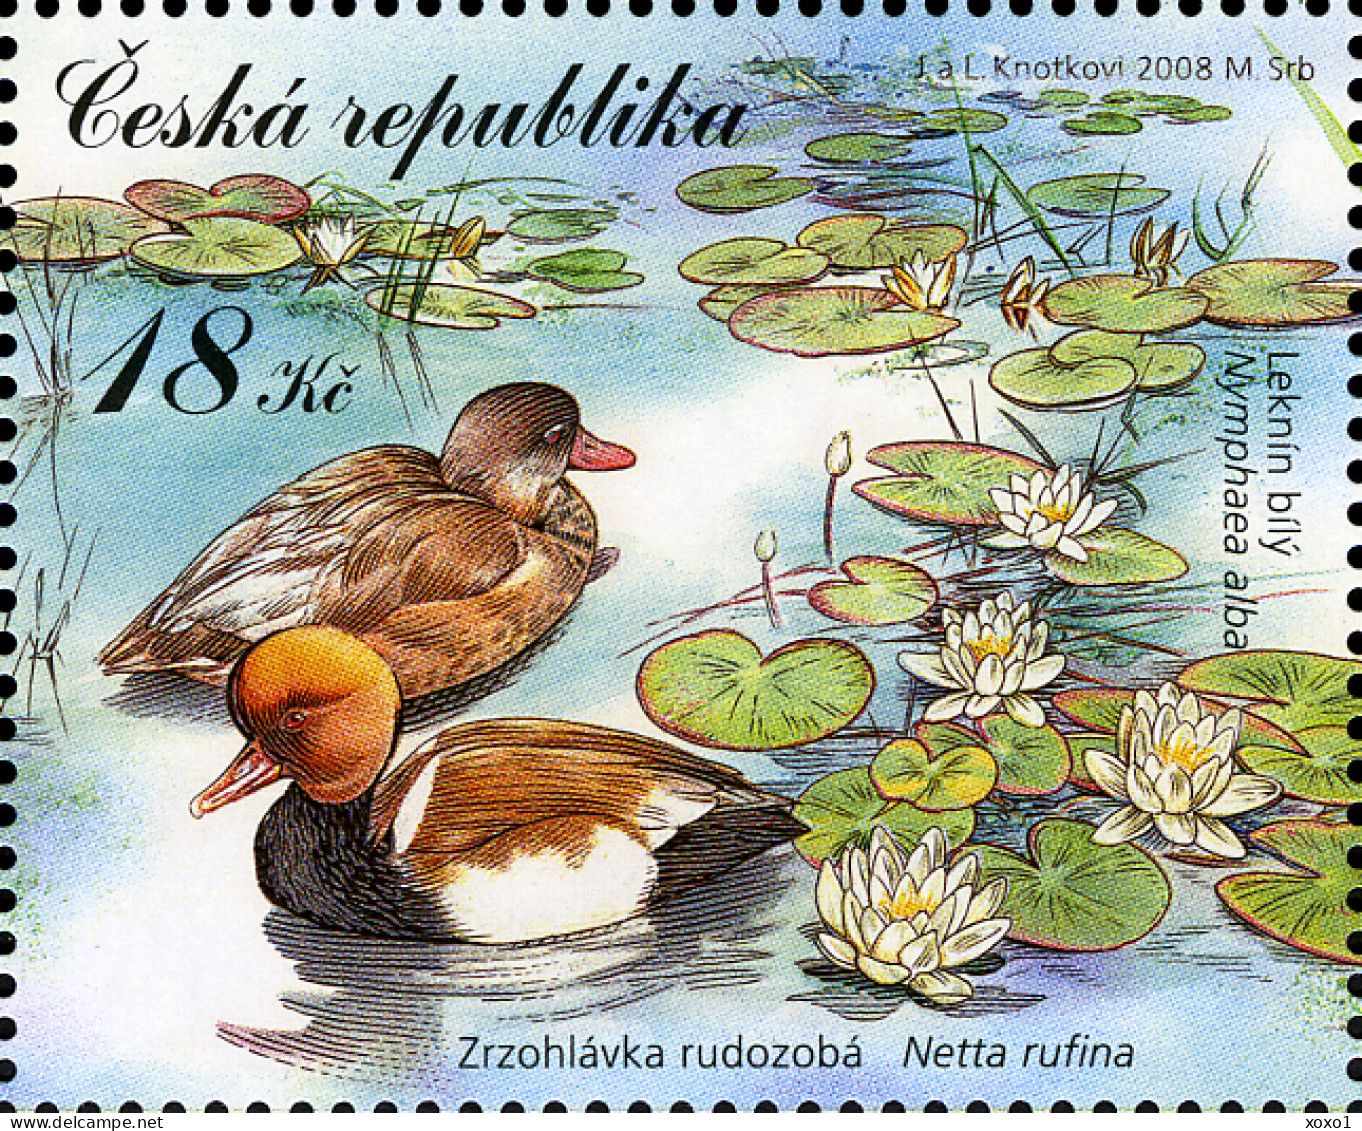 Czech Republic 2008 MiNr. (Block 30) Tschechische Republik UNESCO Birds Mammals Insects Frogs S\sh   MNH** 5.00 € - Águilas & Aves De Presa